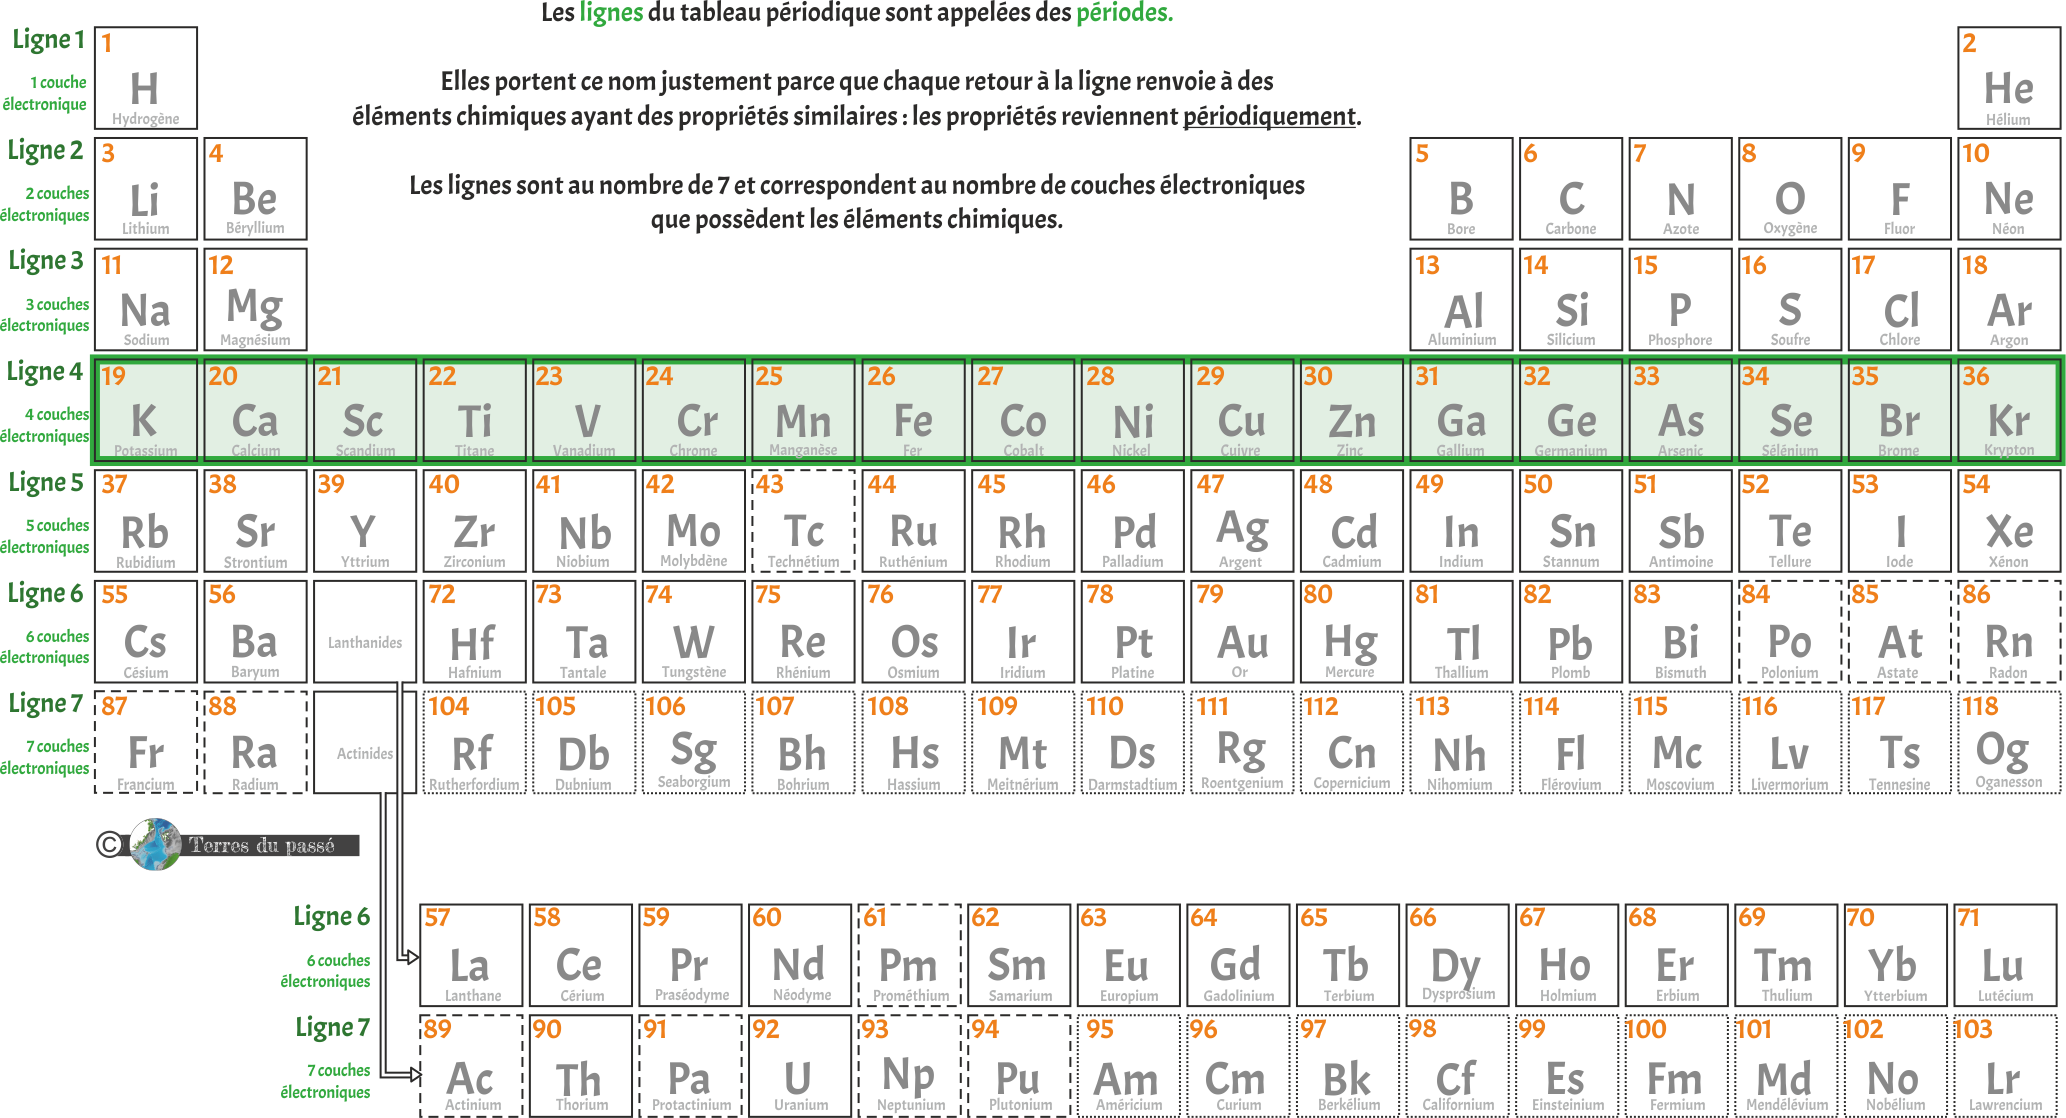 Les lignes du tableau périodique des éléments sont des périodes, chaque ligne représente le nombre de couches électroniques de l'élément chimique